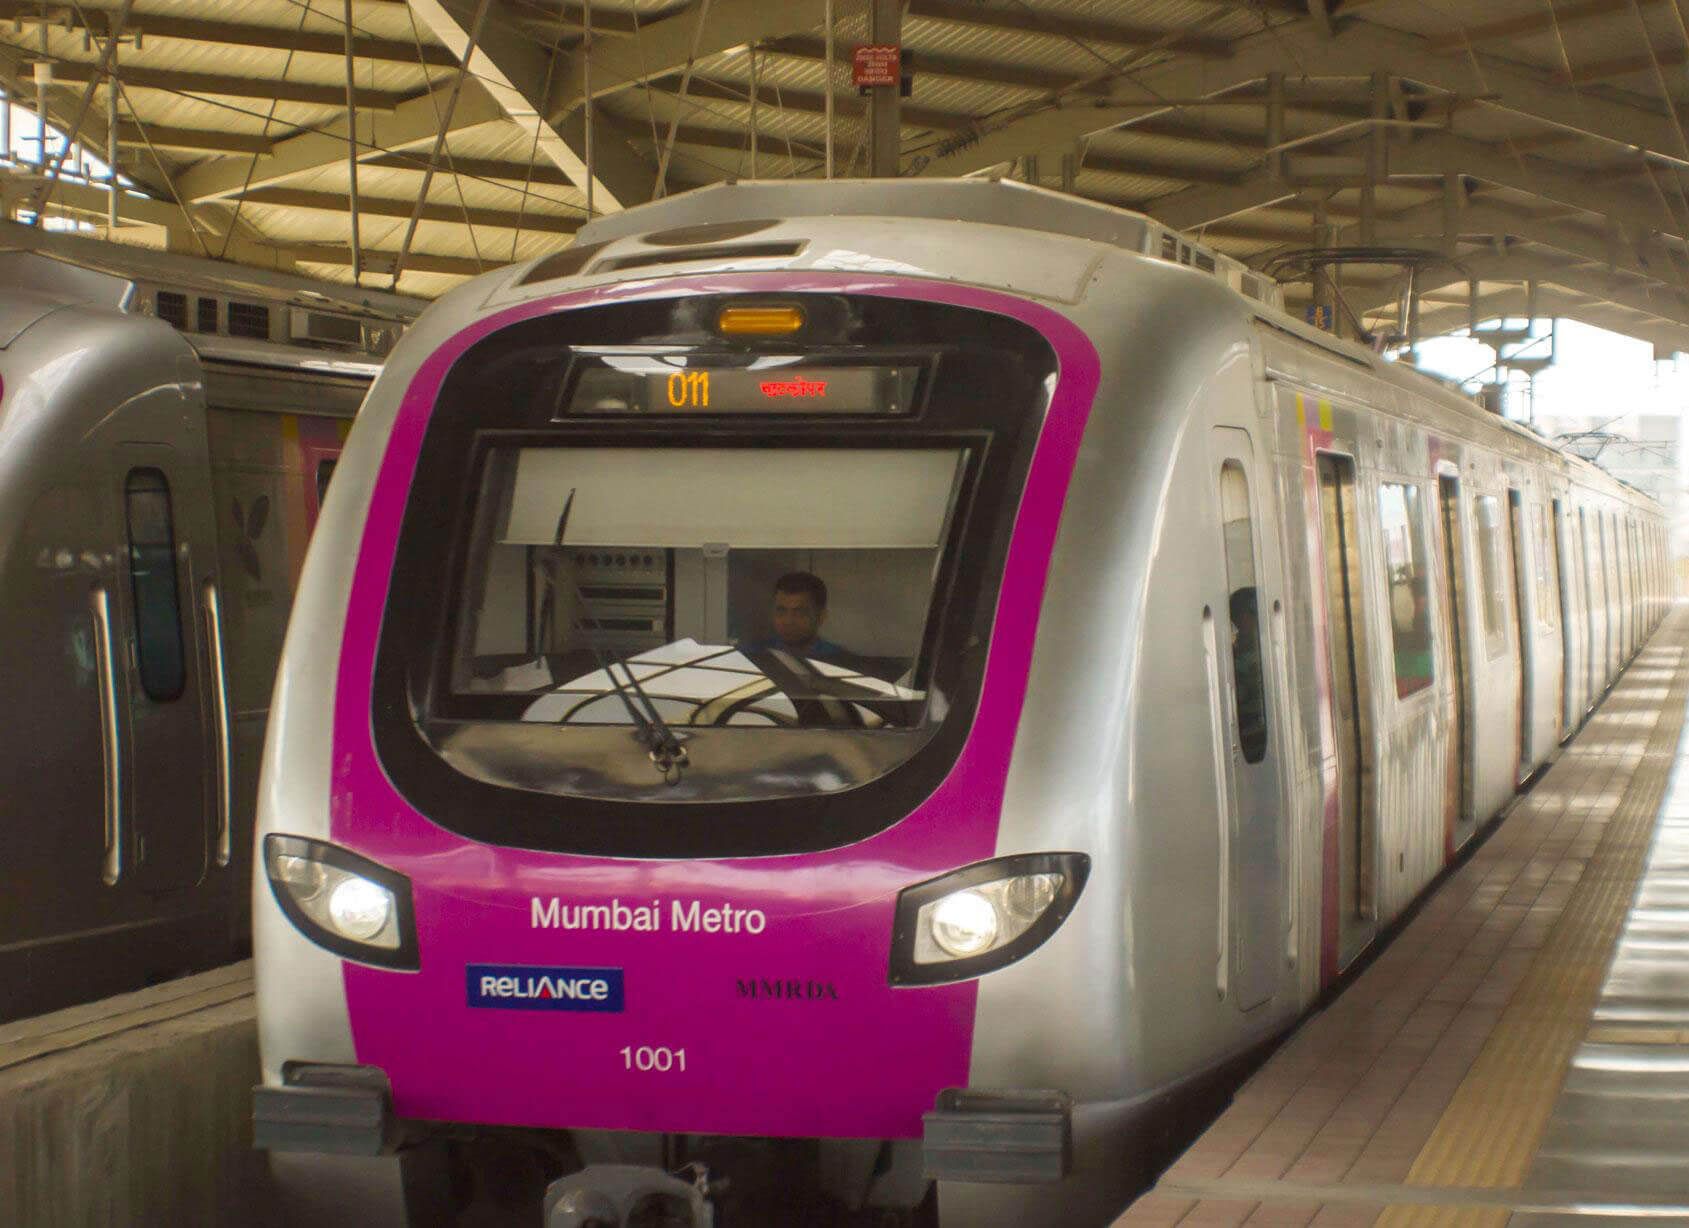 He aha ka mea maʻamau ma waena o Taiwan Tourism Bureau a me Mumbai metro?